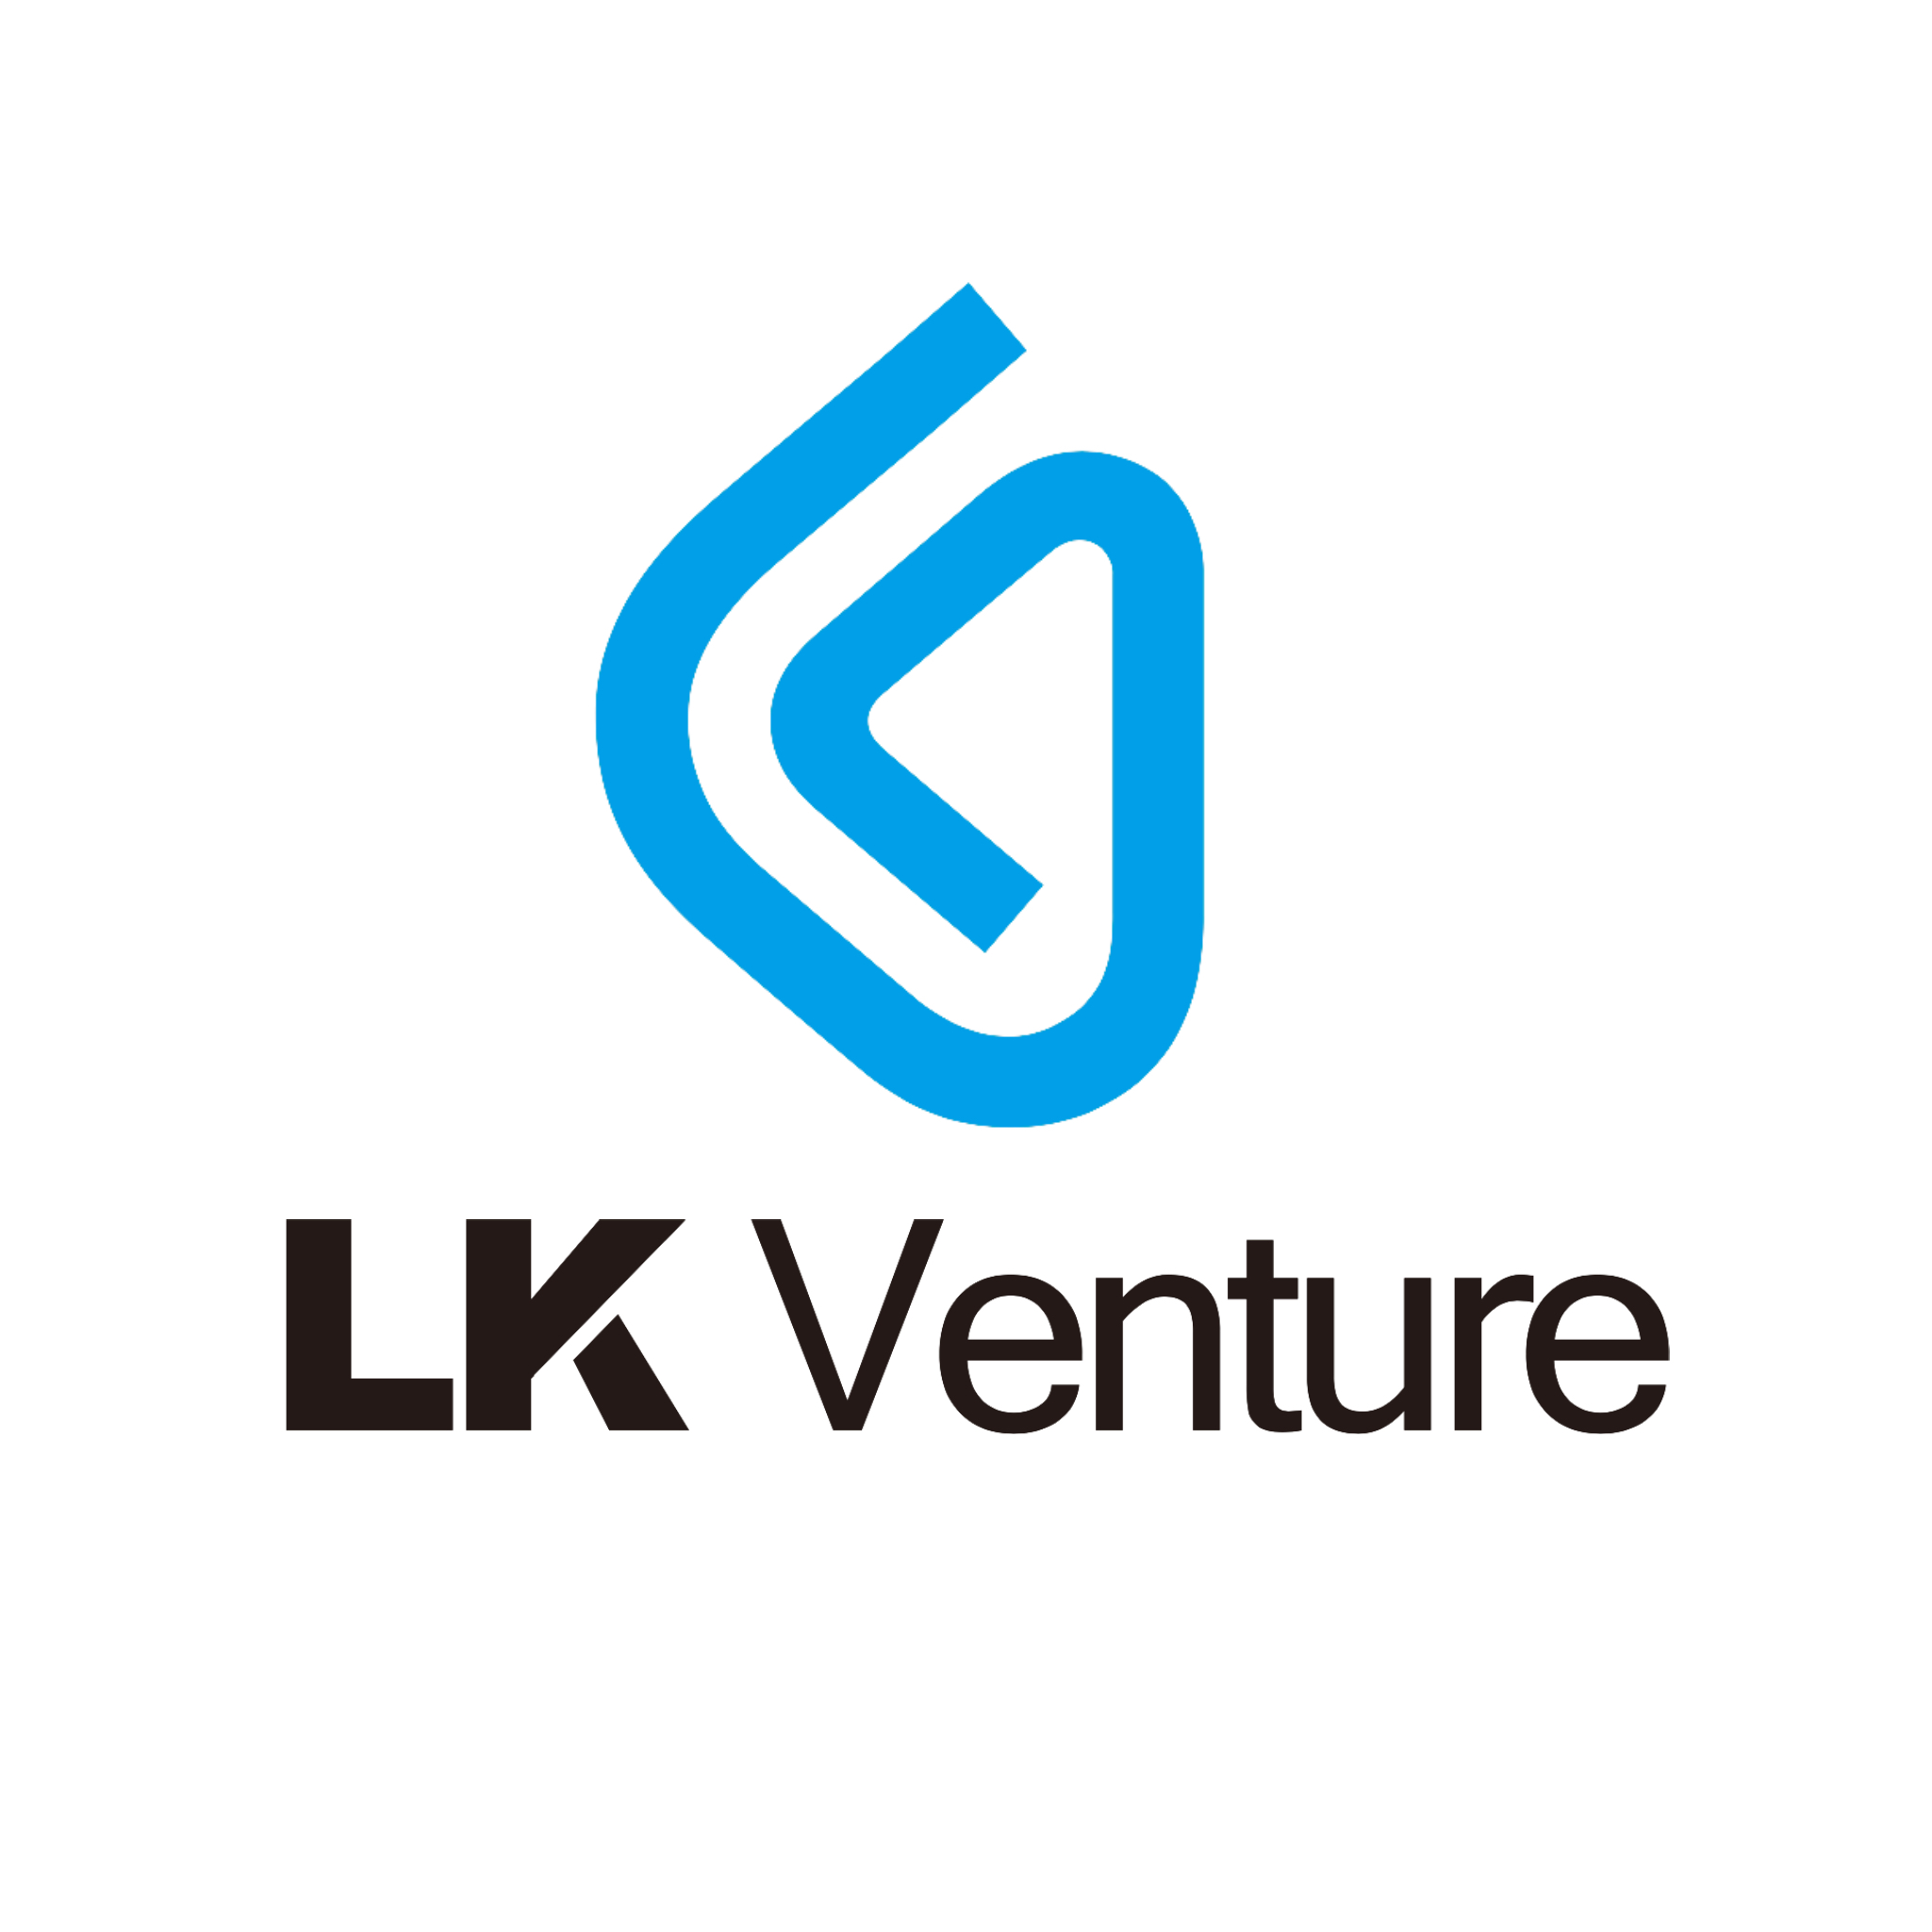 LK Venture